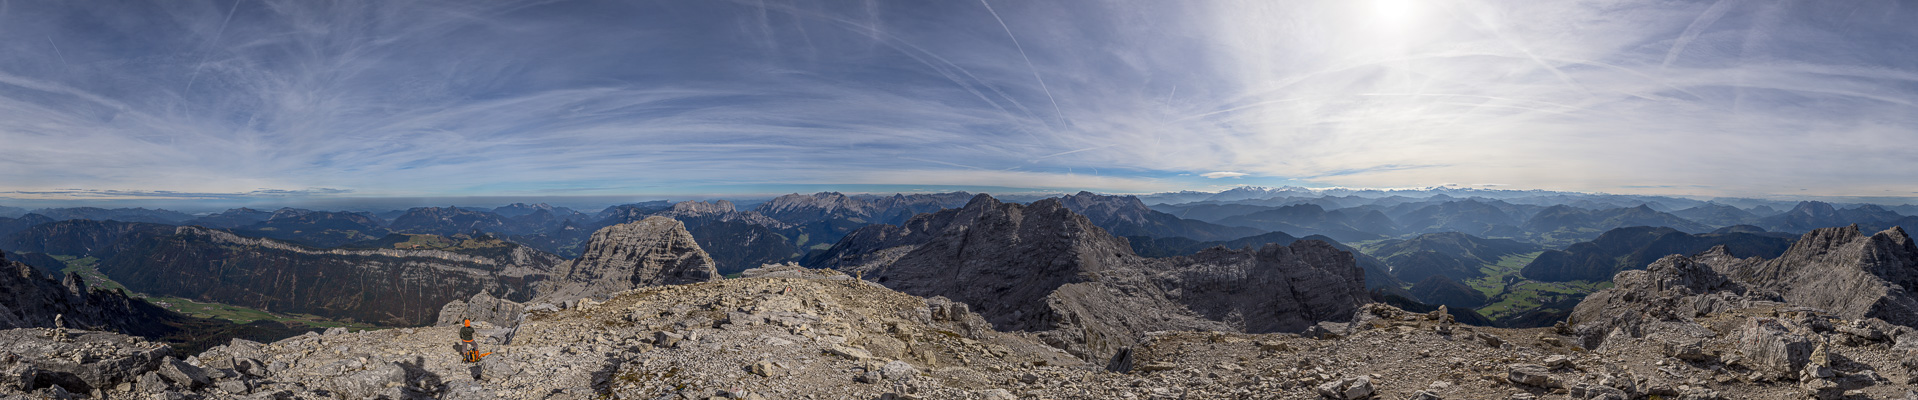 Von den Tauern bis zu den Ötztaler Alpen - vom Dachstein bis zur Hochalmspitze.